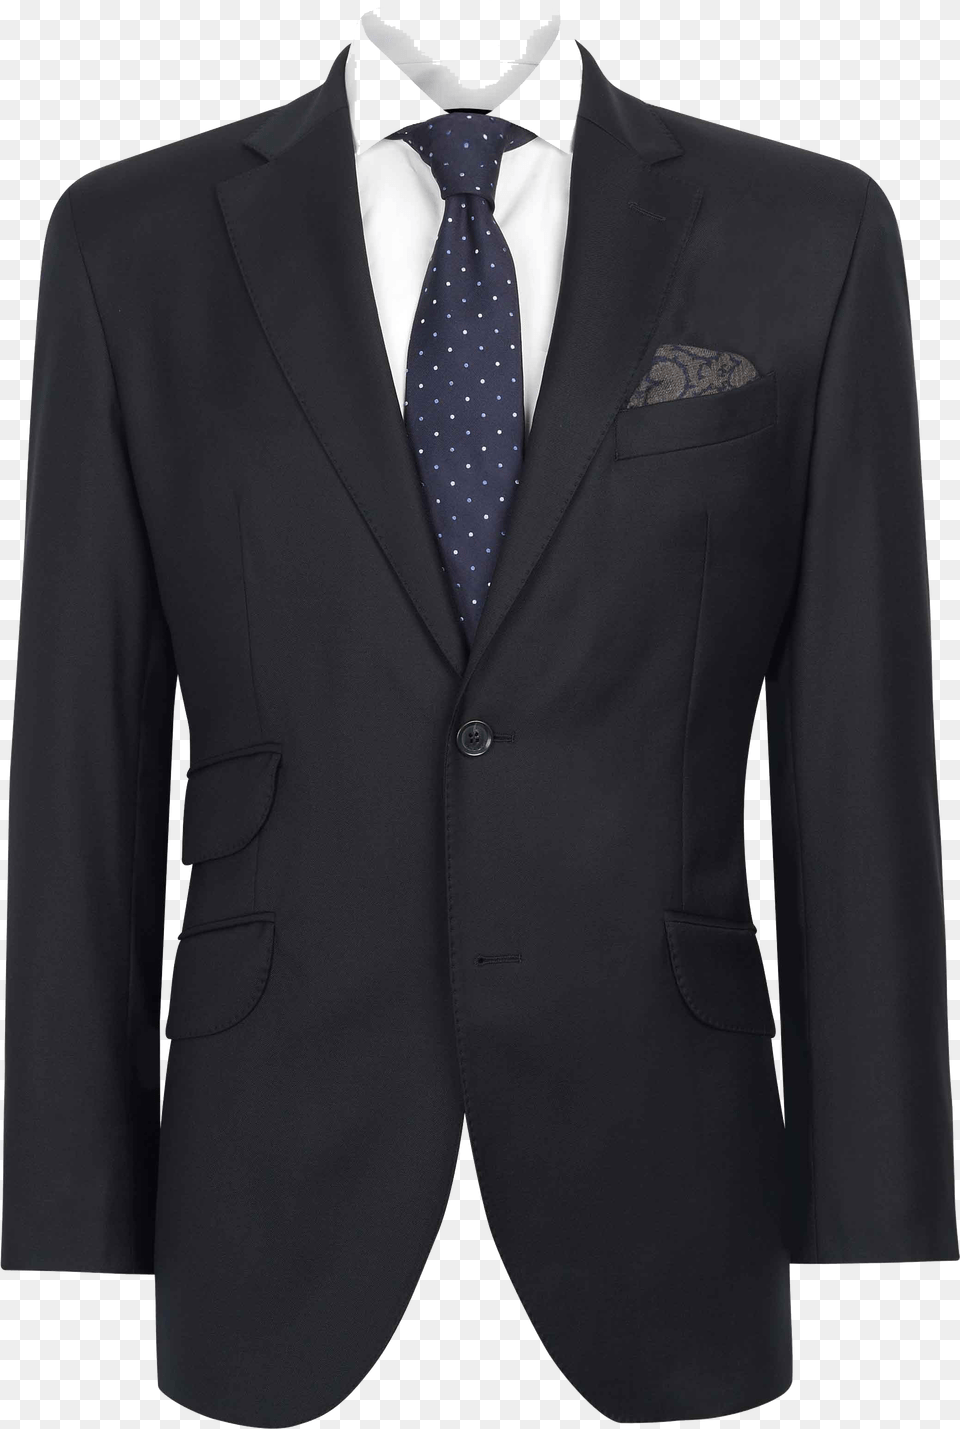 Suit Suit Transparent, Accessories, Clothing, Formal Wear, Tie Png Image